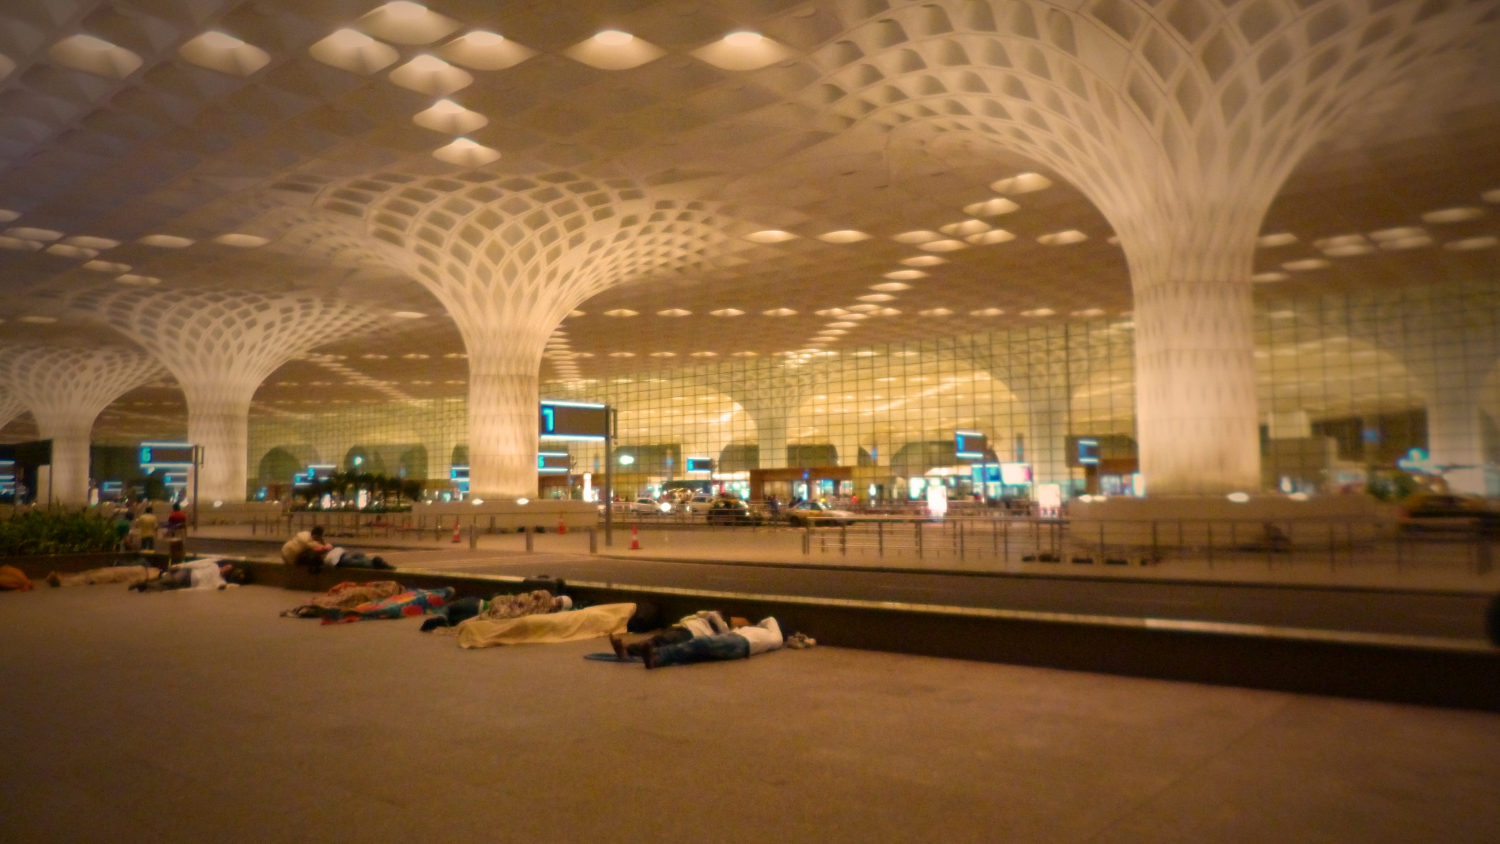 A Mumbai Nemzetközi Repülőtéren utasok várakoznak békésen, álomba szenderülve. - (Fotó: Szabó Rolasd)